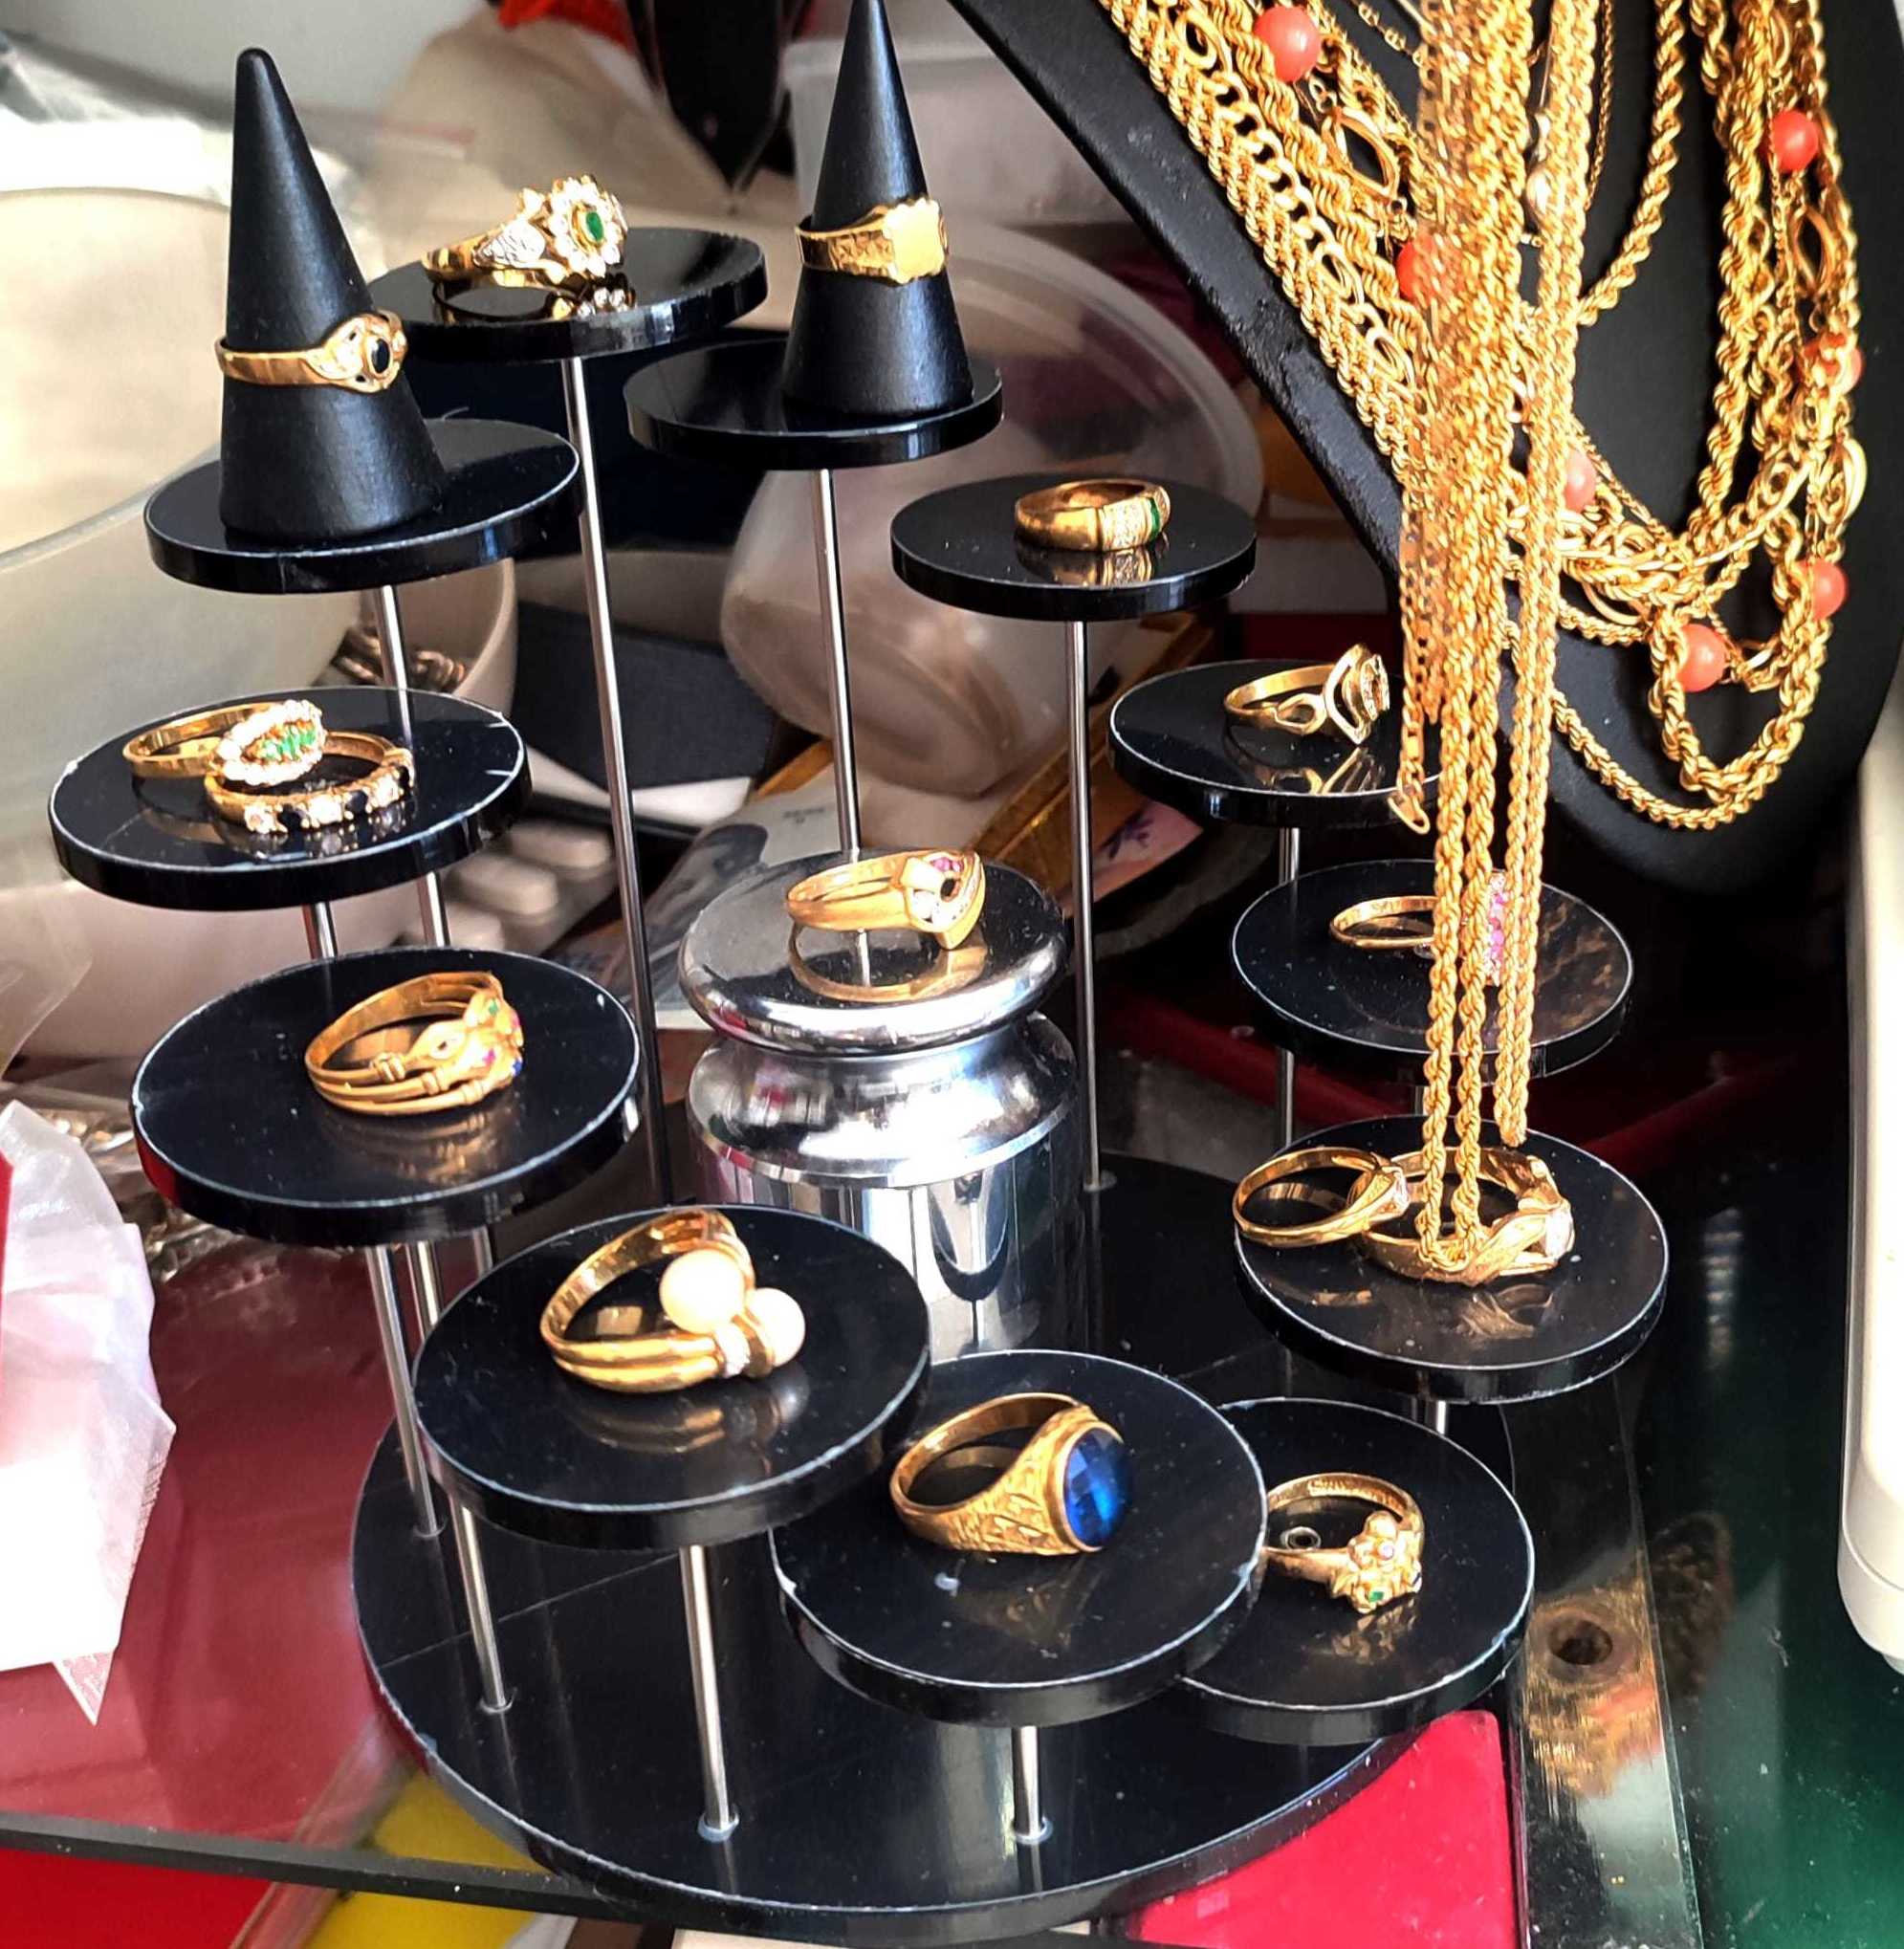 Foto 4 de Compra de oro y empeños en  | Compro Oro Santa Rita